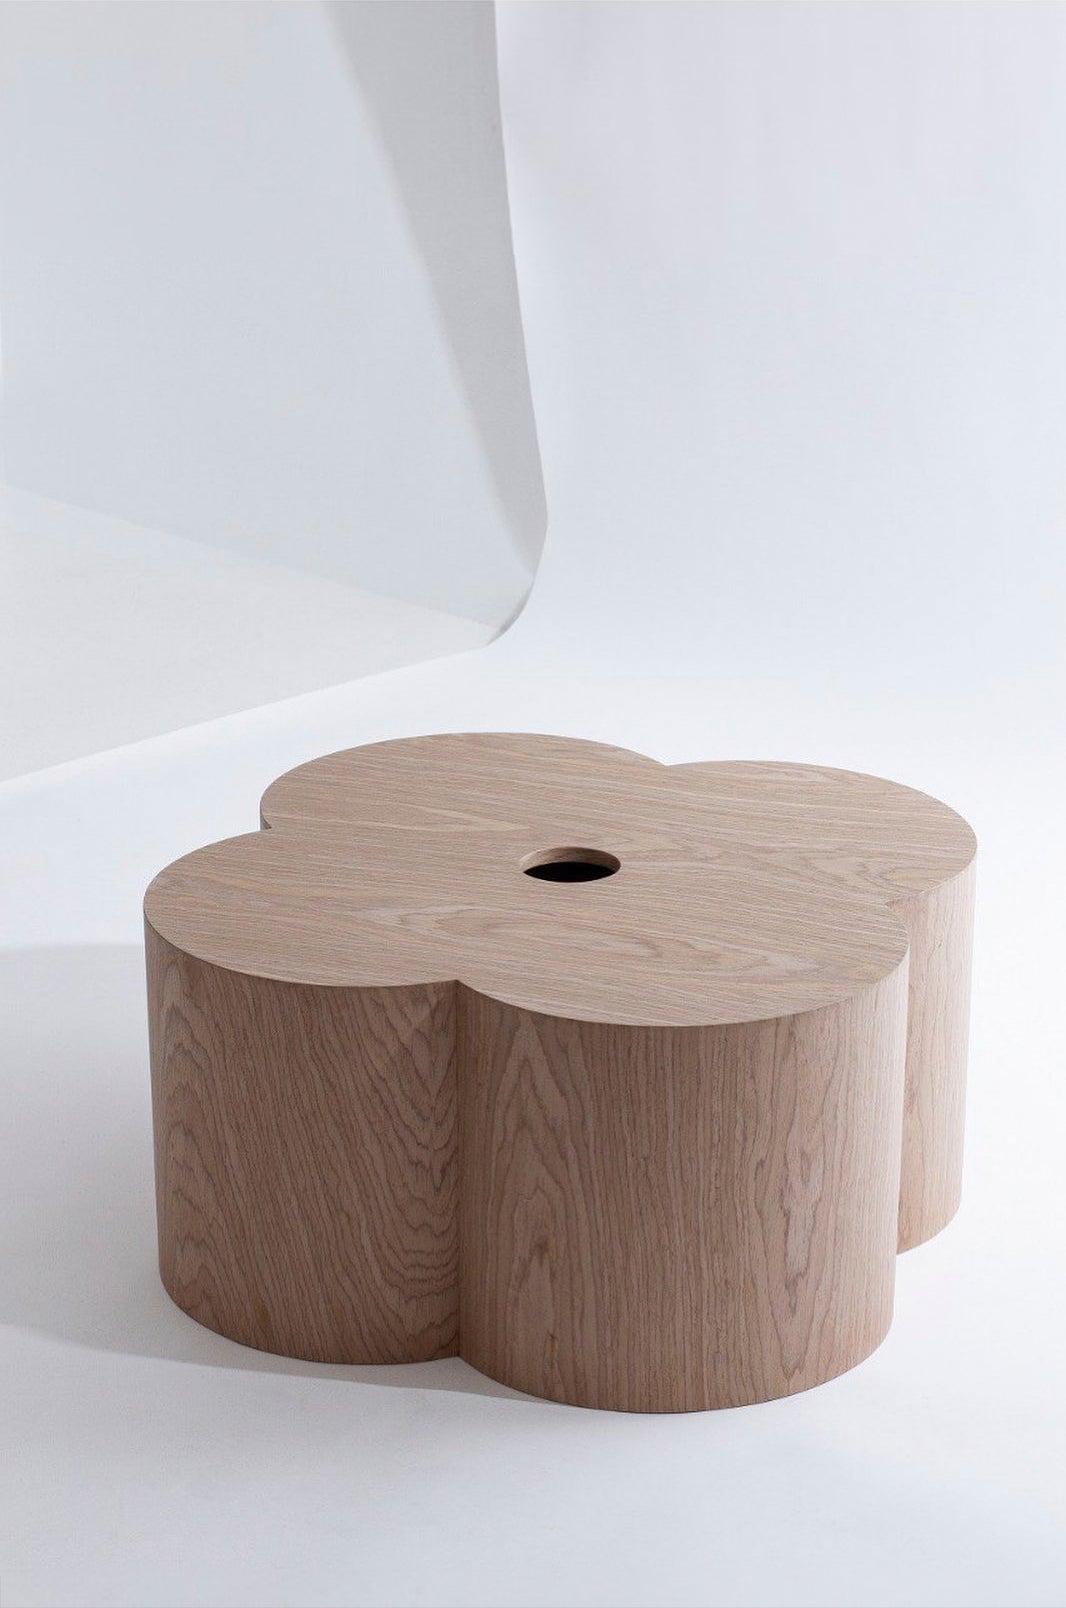 Moderner Tisch aus Eichenfurnier im Minimalismus: Schlankes Design für Contemporary Living Spaces